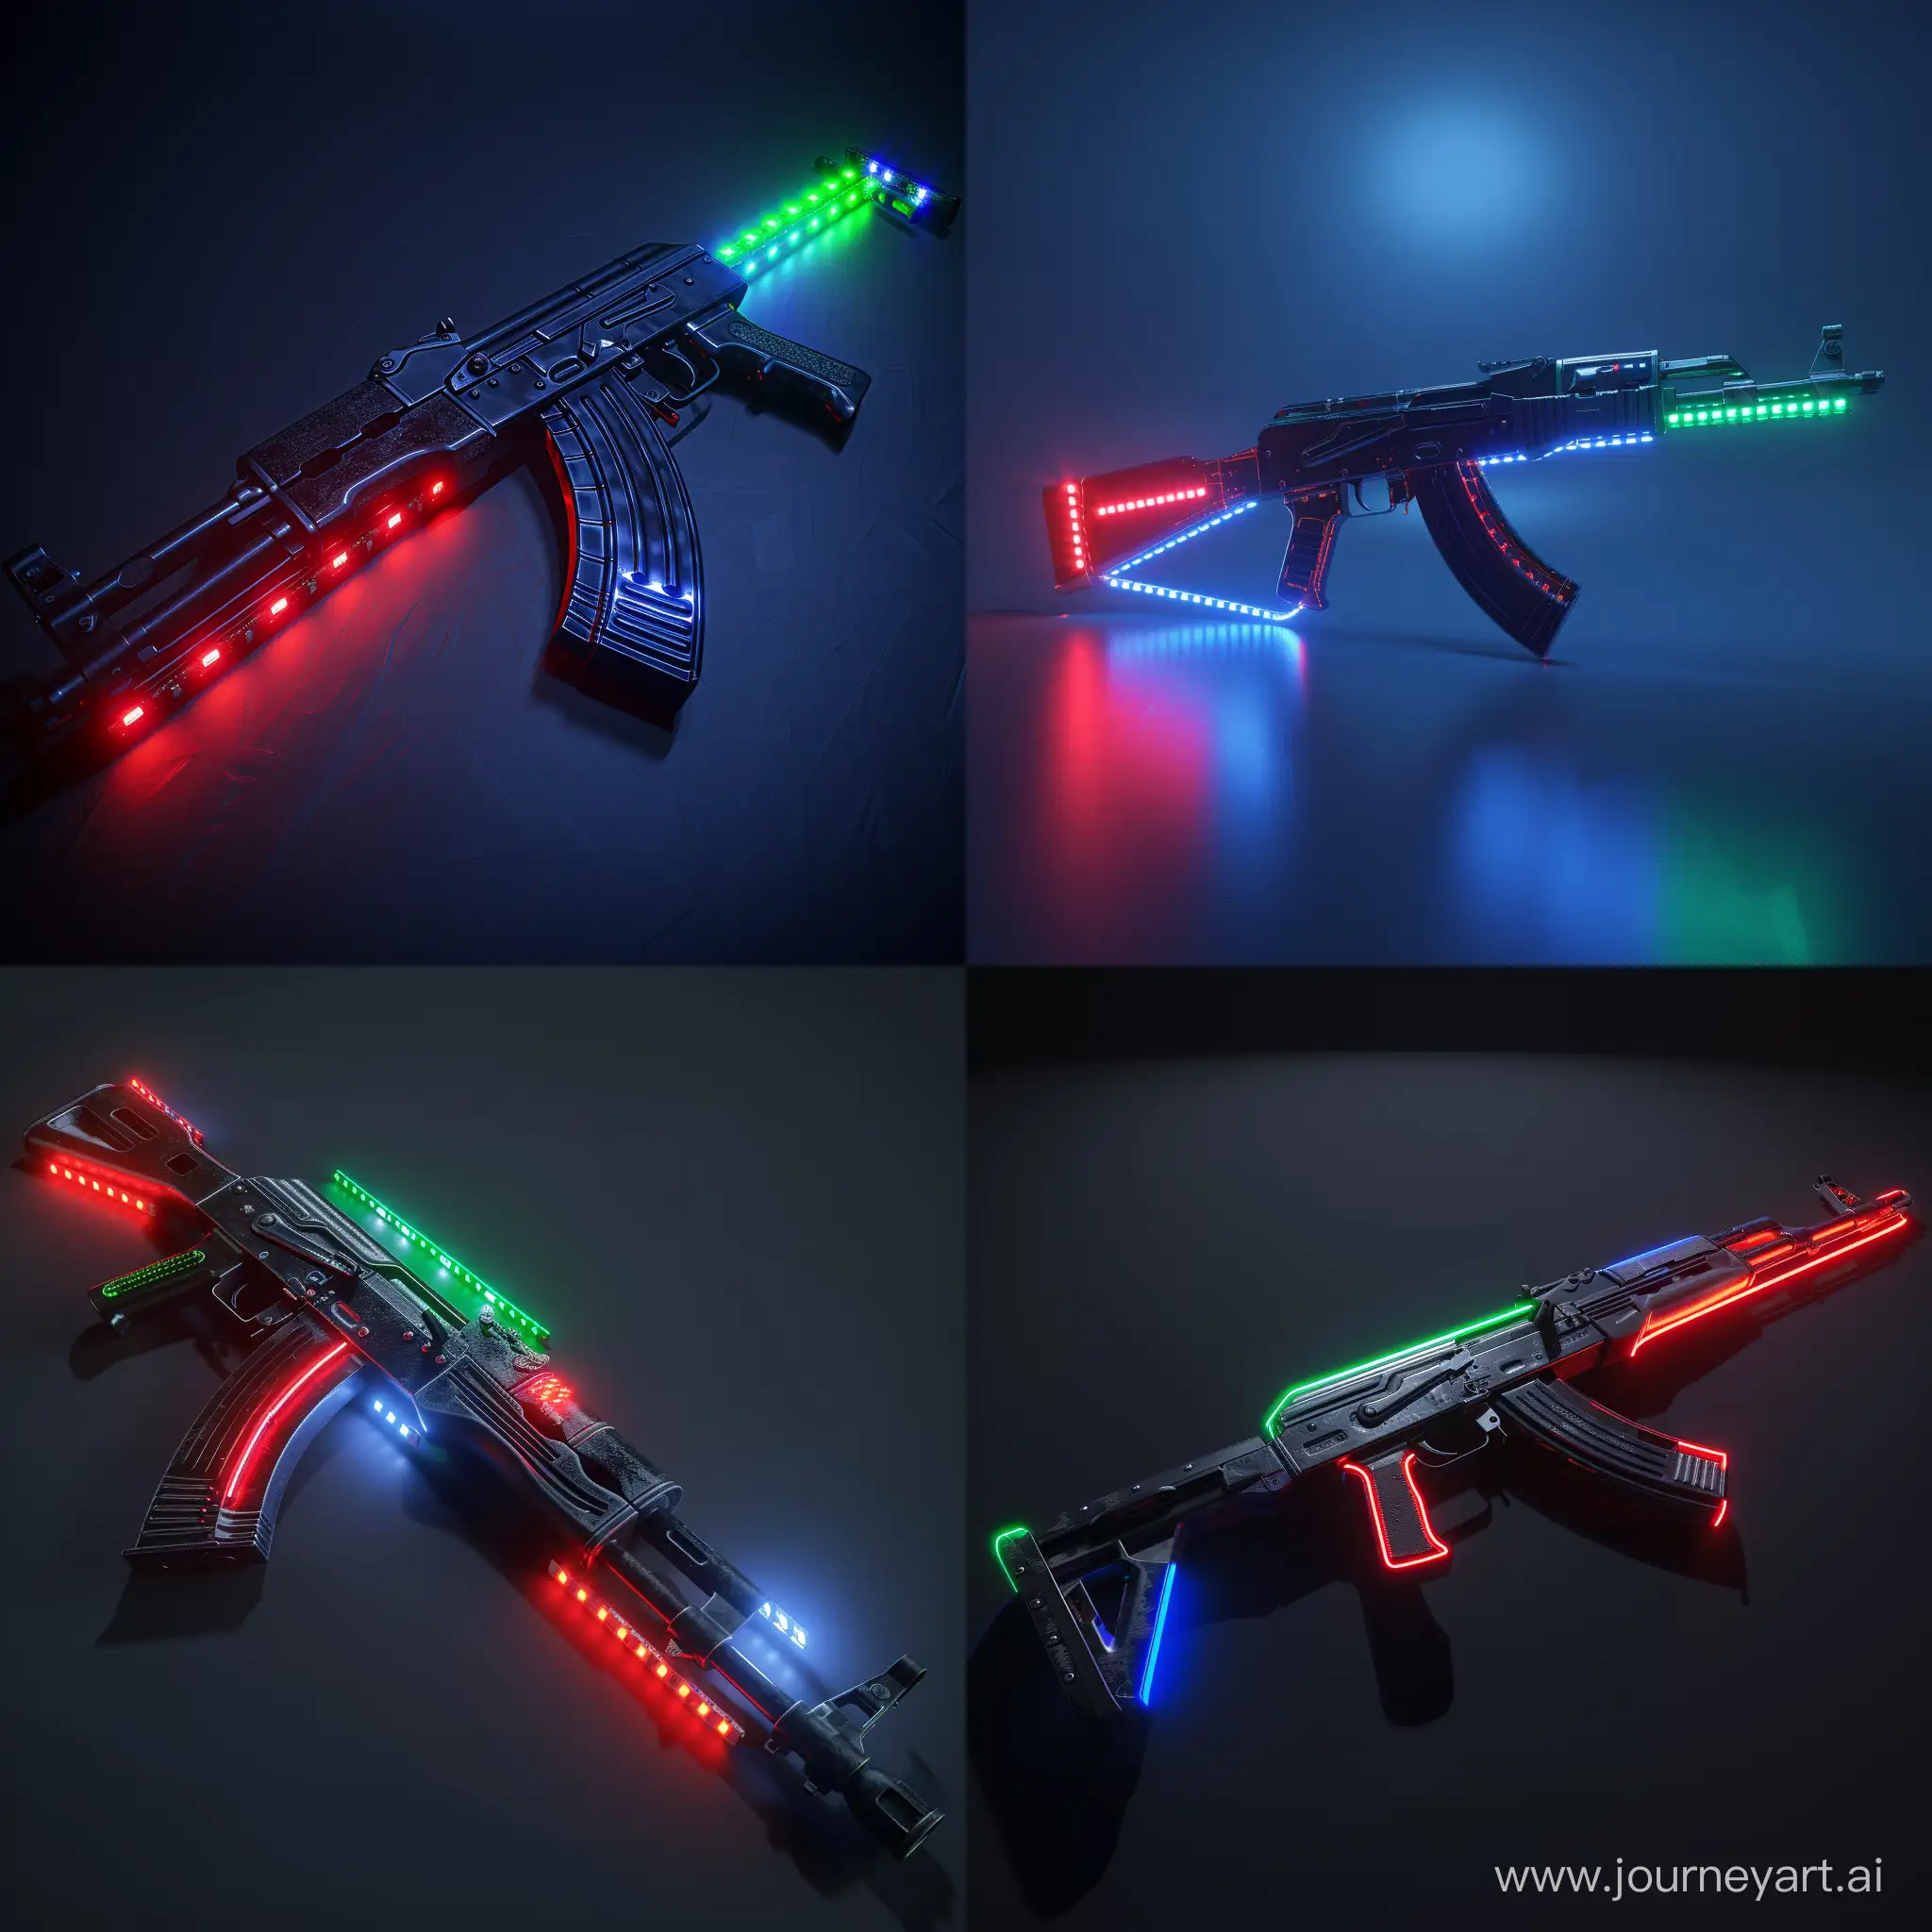 Futuristic AK-47, octane render, red LED stript lights, green LED strip lights, blue LED strip lights